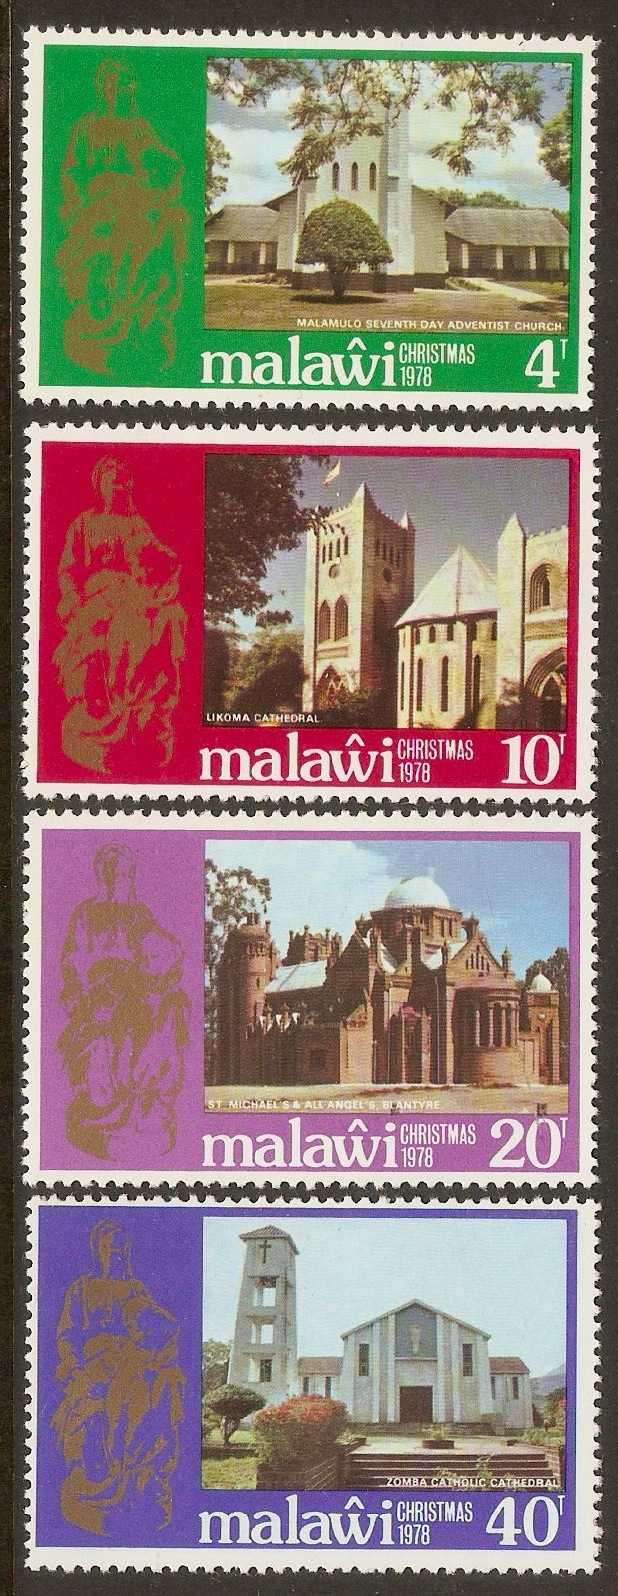 Malawi 1978 Christmas set. SG572-SG575.